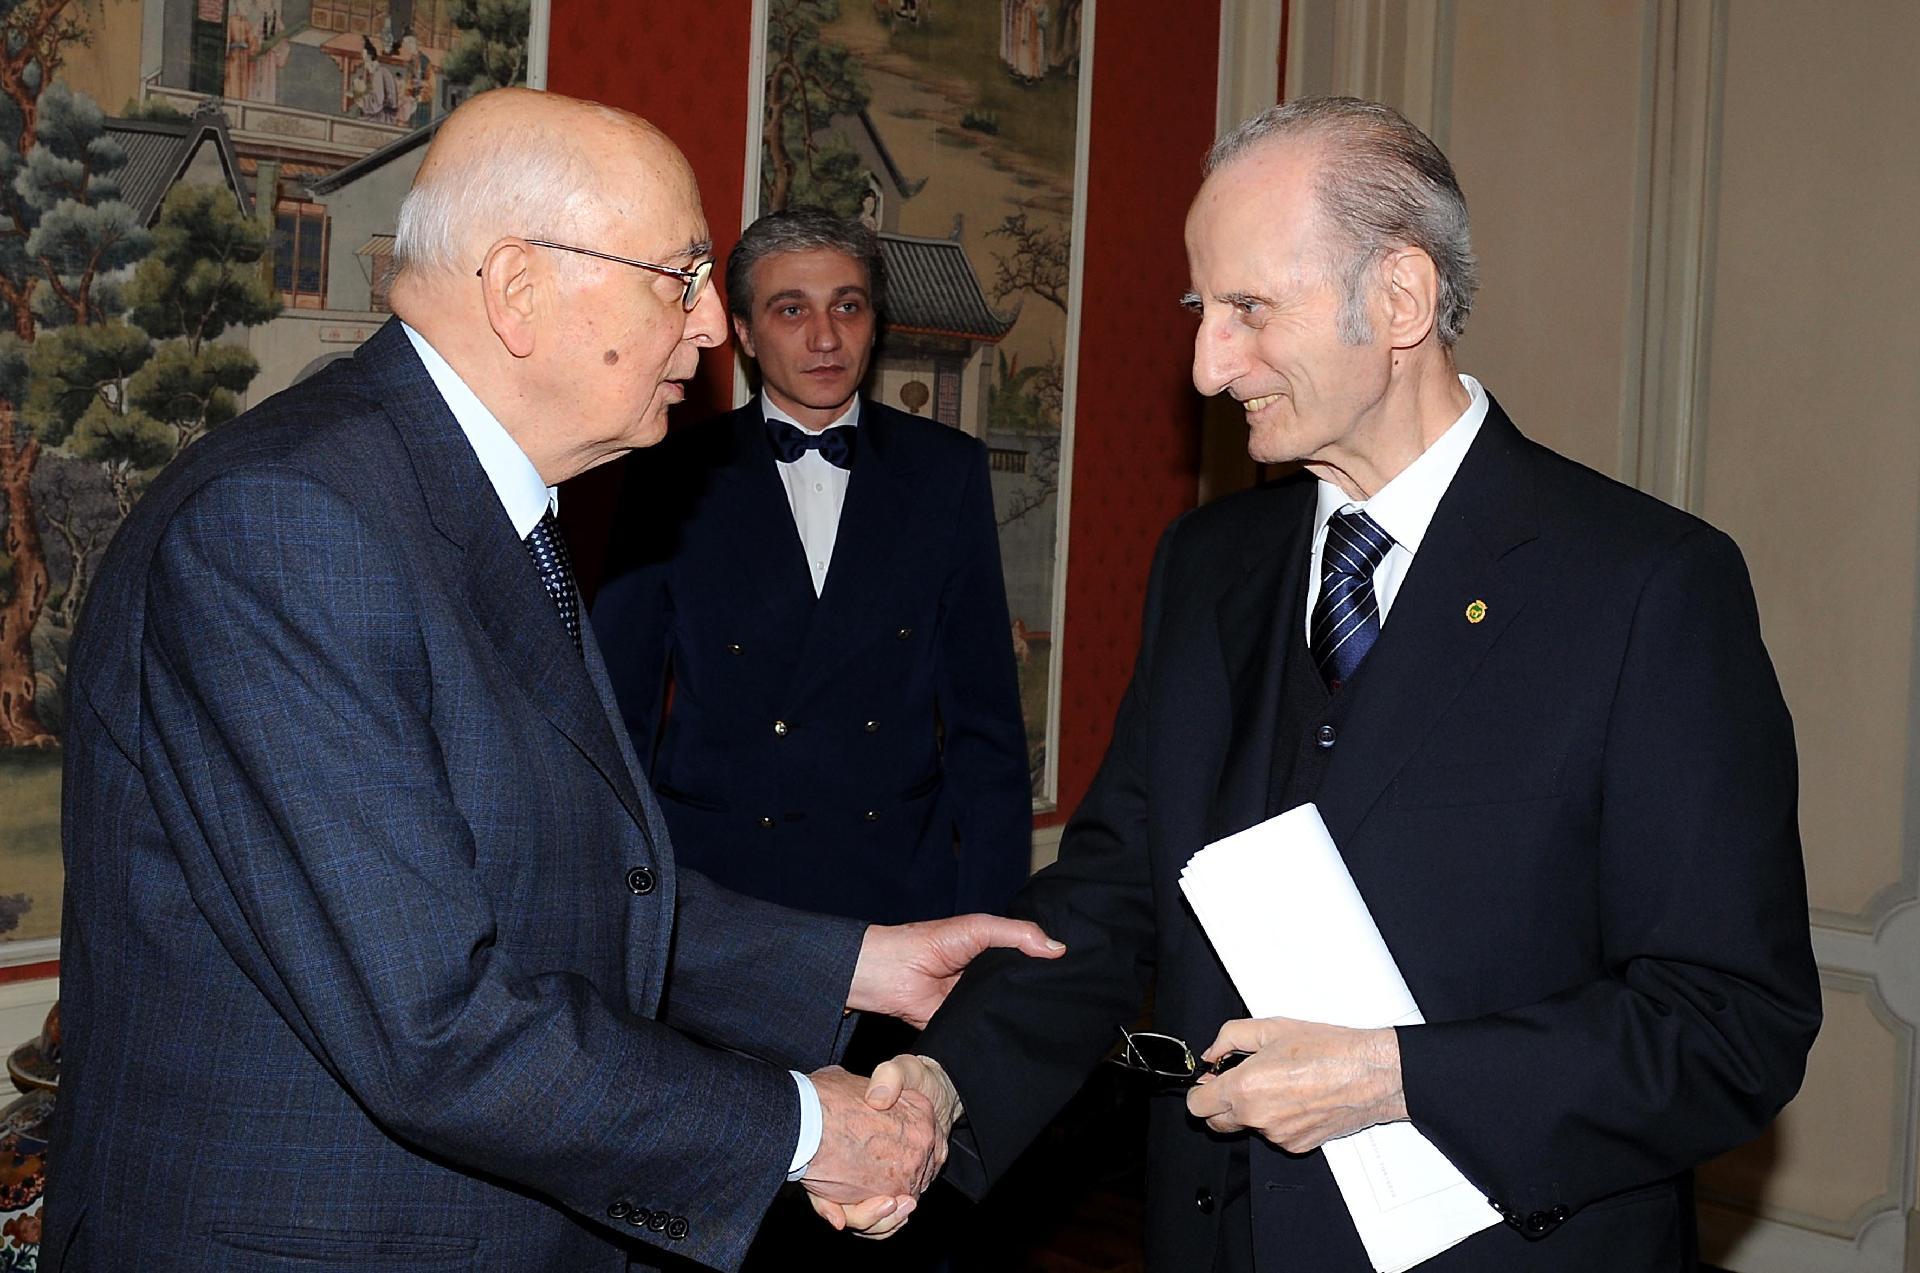 Il Presidente Giorgio Napolitano accoglie il Prof. Giovanni Battista Conso, Presidente dell'Accademia Nazionale dei Lincei in occasione dell'incontro con gli esponenti delle Accademie Nazionali delle Scienze dei Paesi aderenti al G8